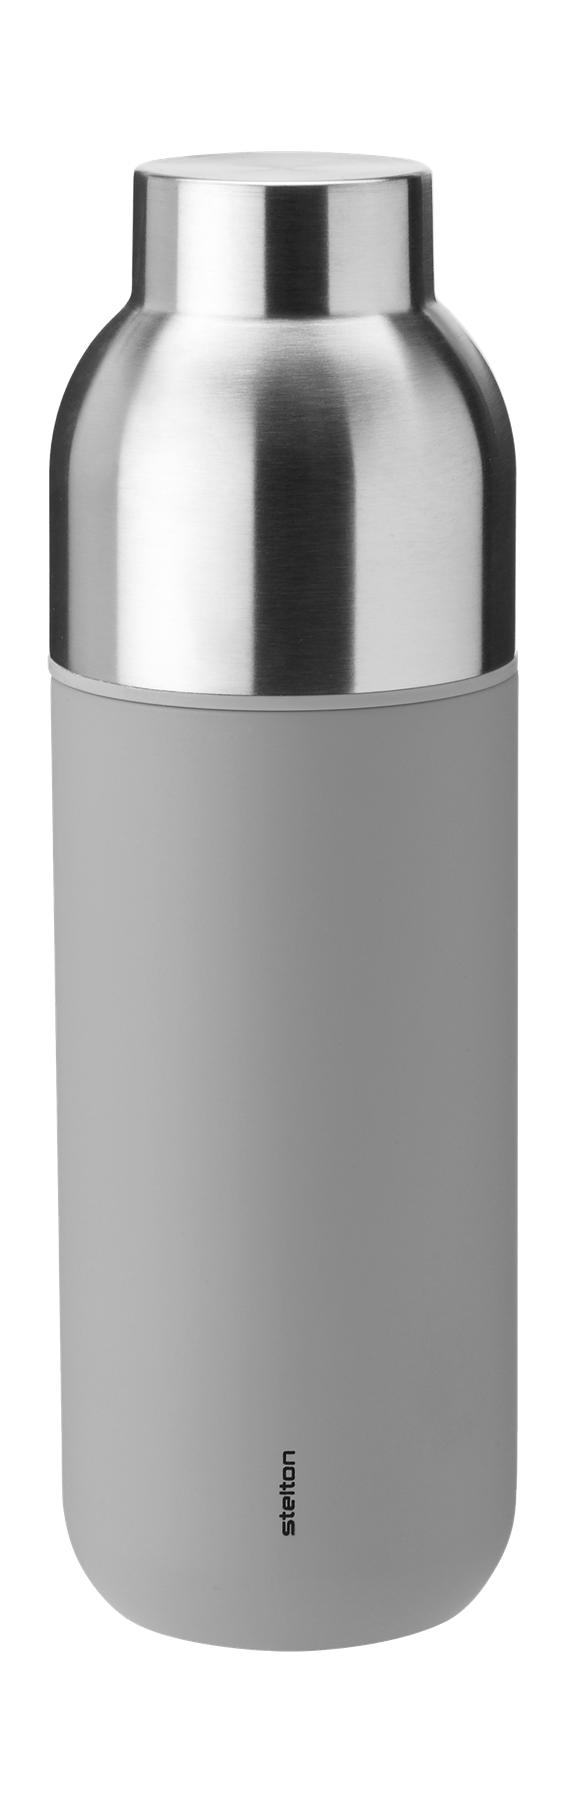 Stelton Keep Warm Thermos Bottle 0,75 L, gris claro